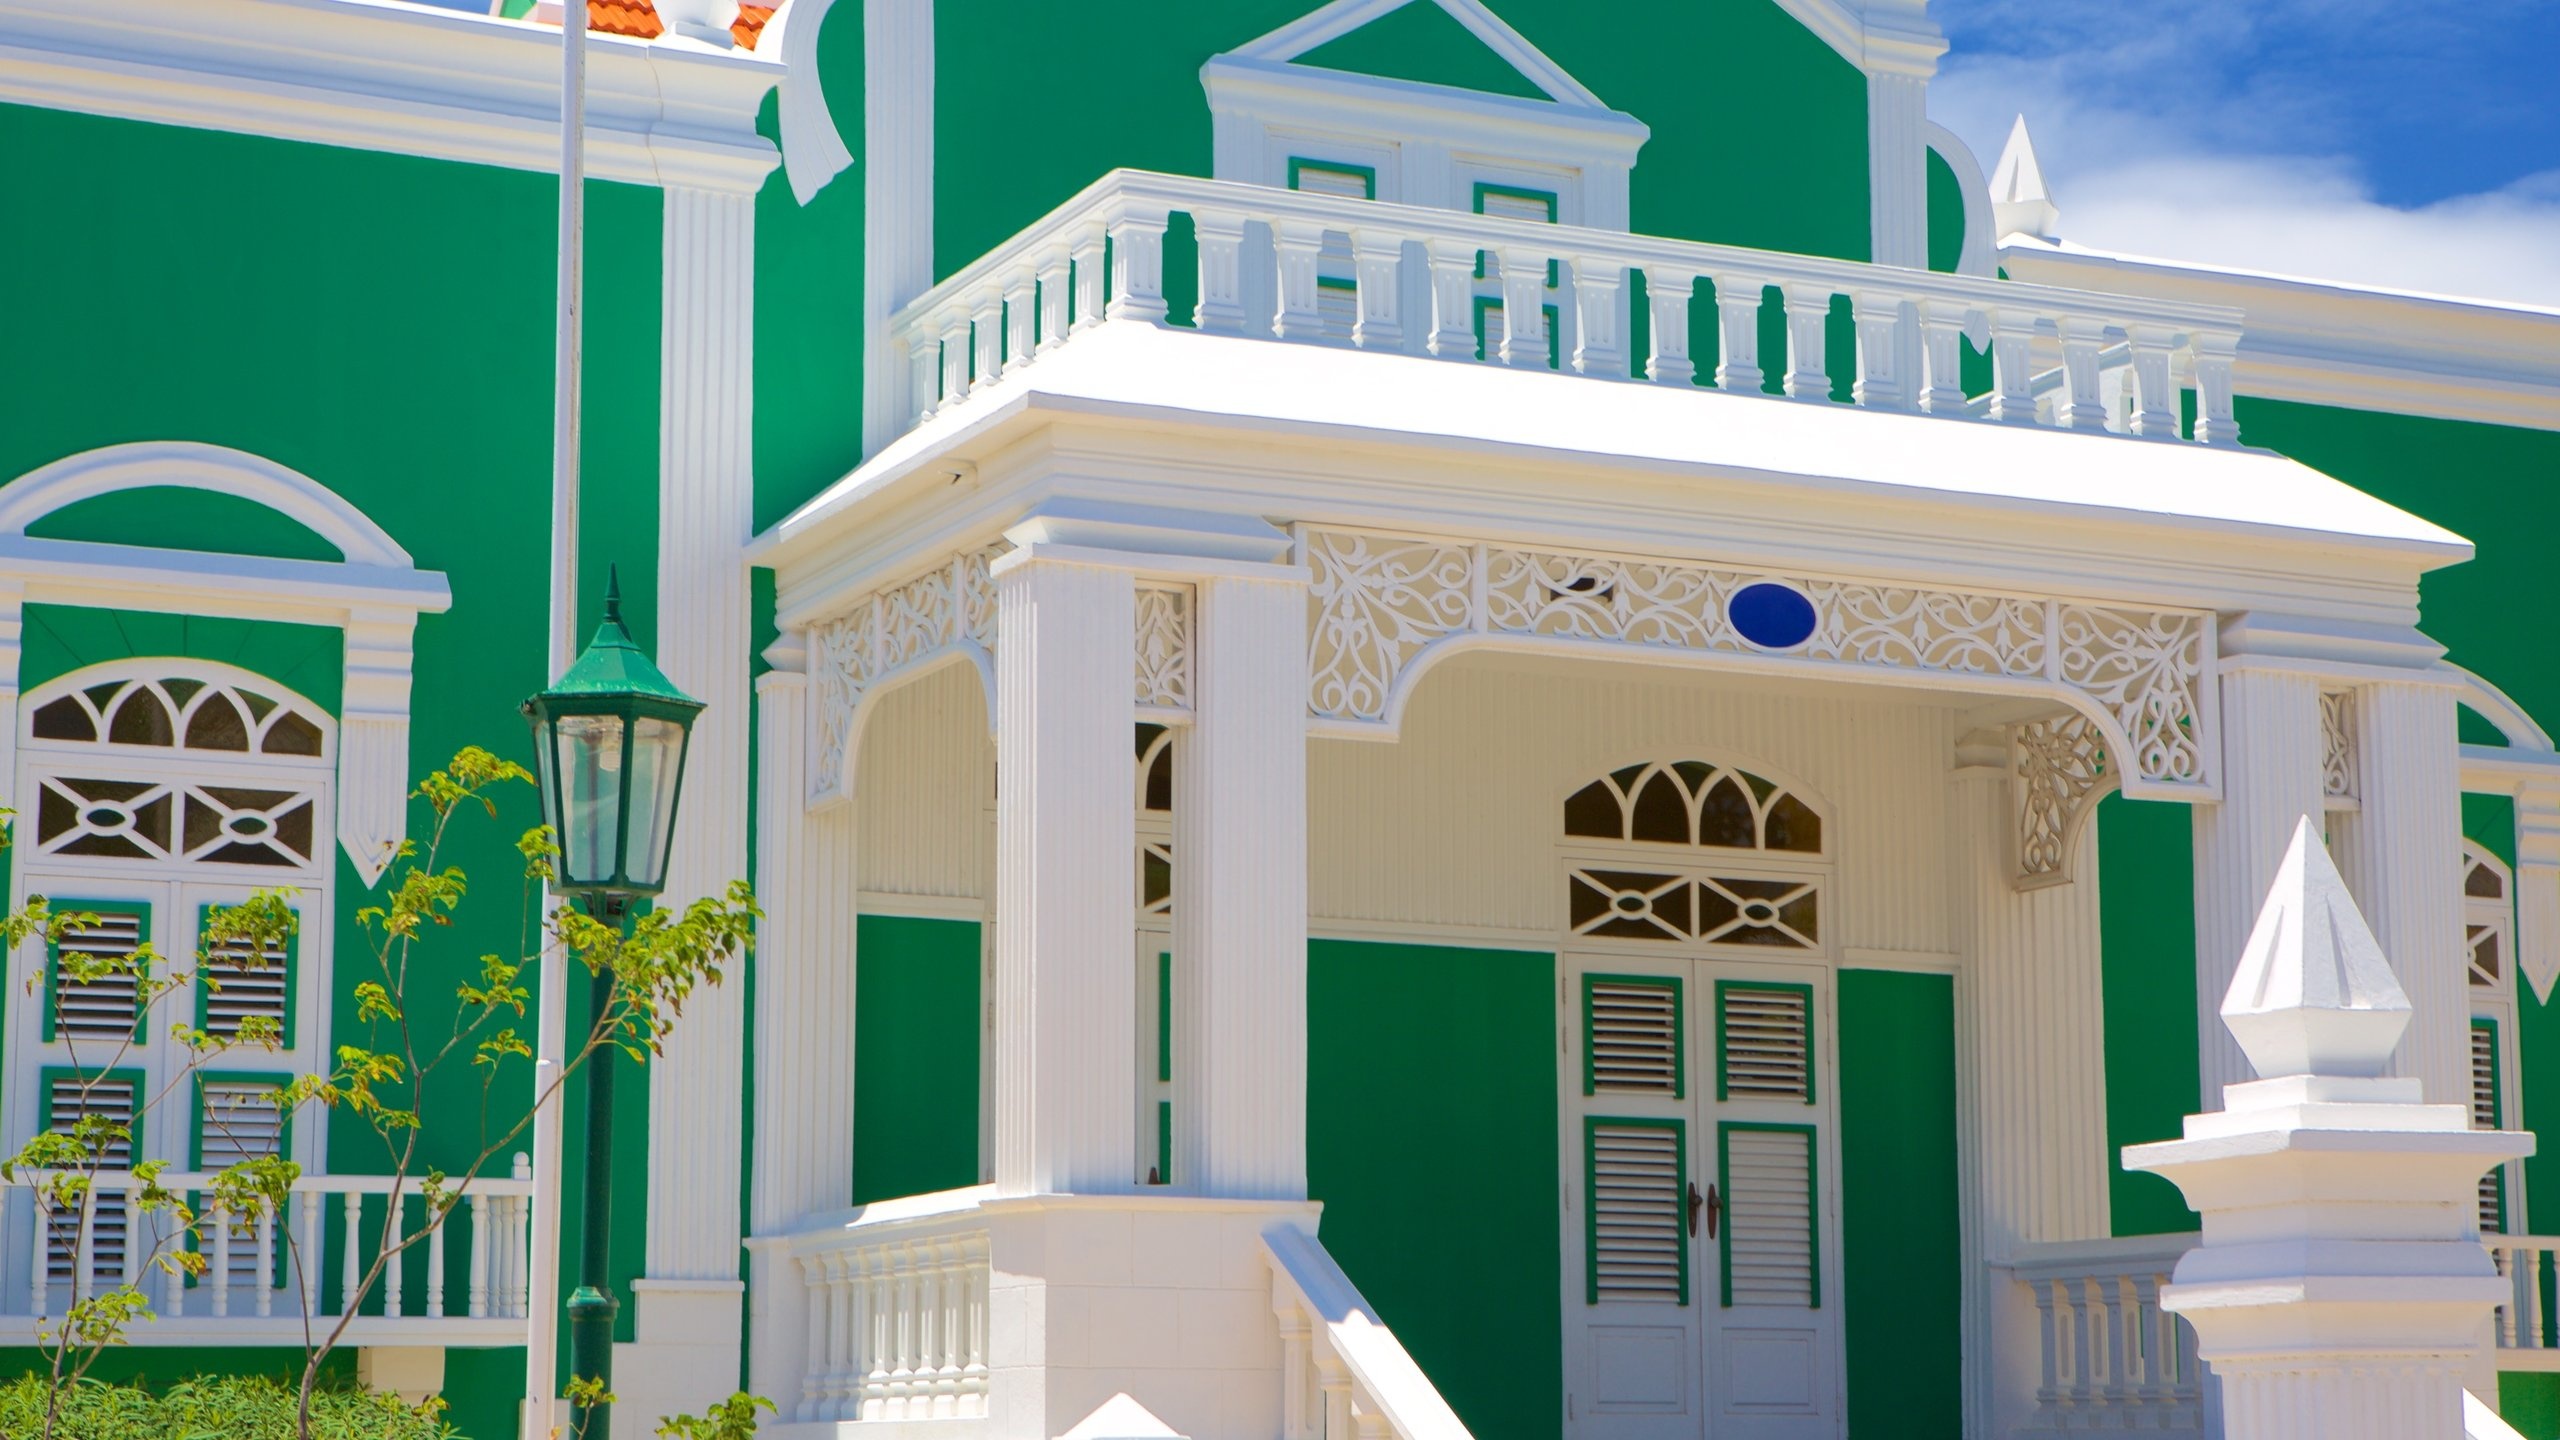 Oranjestad, Ferienwohnung Rathaus, Aruba, 2560x1440 HD Desktop